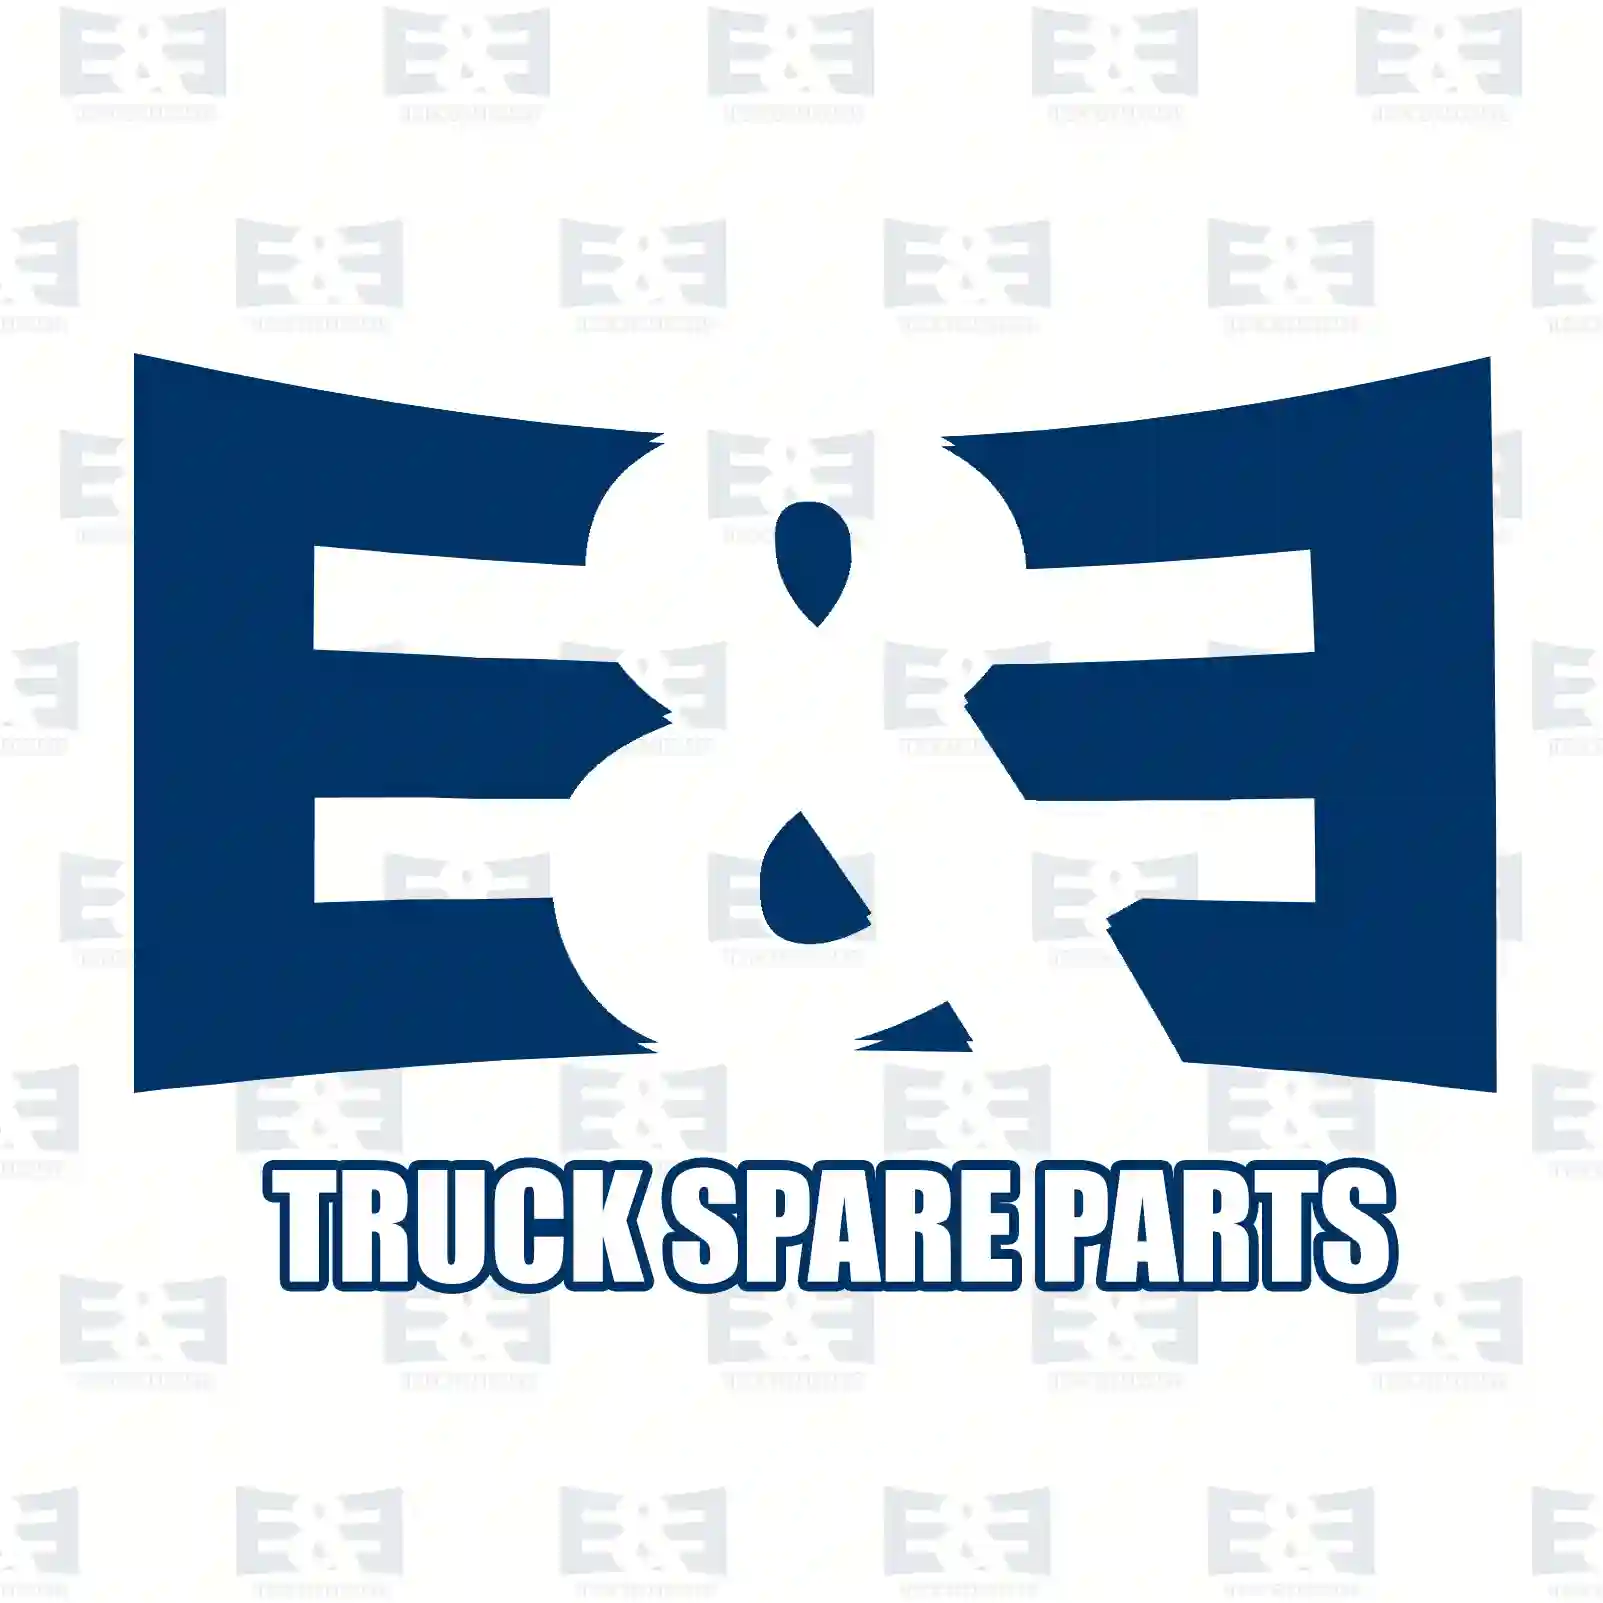 Oil seal, 2E2278973, 7420483426, 20483426, ZG02643-0008, , ||  2E2278973 E&E Truck Spare Parts | Truck Spare Parts, Auotomotive Spare Parts Oil seal, 2E2278973, 7420483426, 20483426, ZG02643-0008, , ||  2E2278973 E&E Truck Spare Parts | Truck Spare Parts, Auotomotive Spare Parts